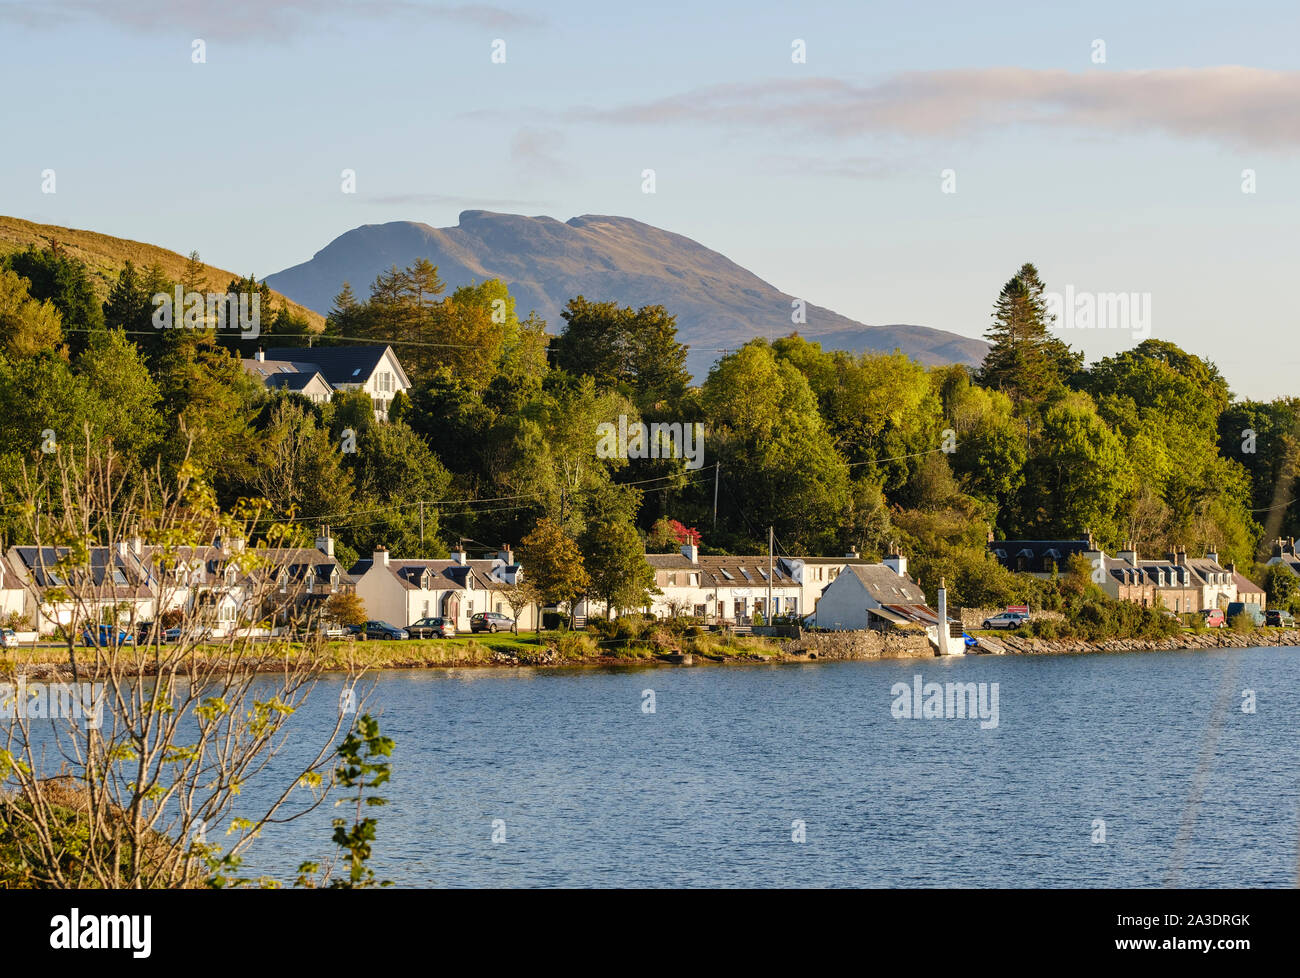 Lochcarron Dorf an den Ufern des Loch Carron, Strathcarron, Wester Ross, Highlands von Schottland. Fuar Tholl (Wellingtons Nase) Berg im Abstand Stockfoto